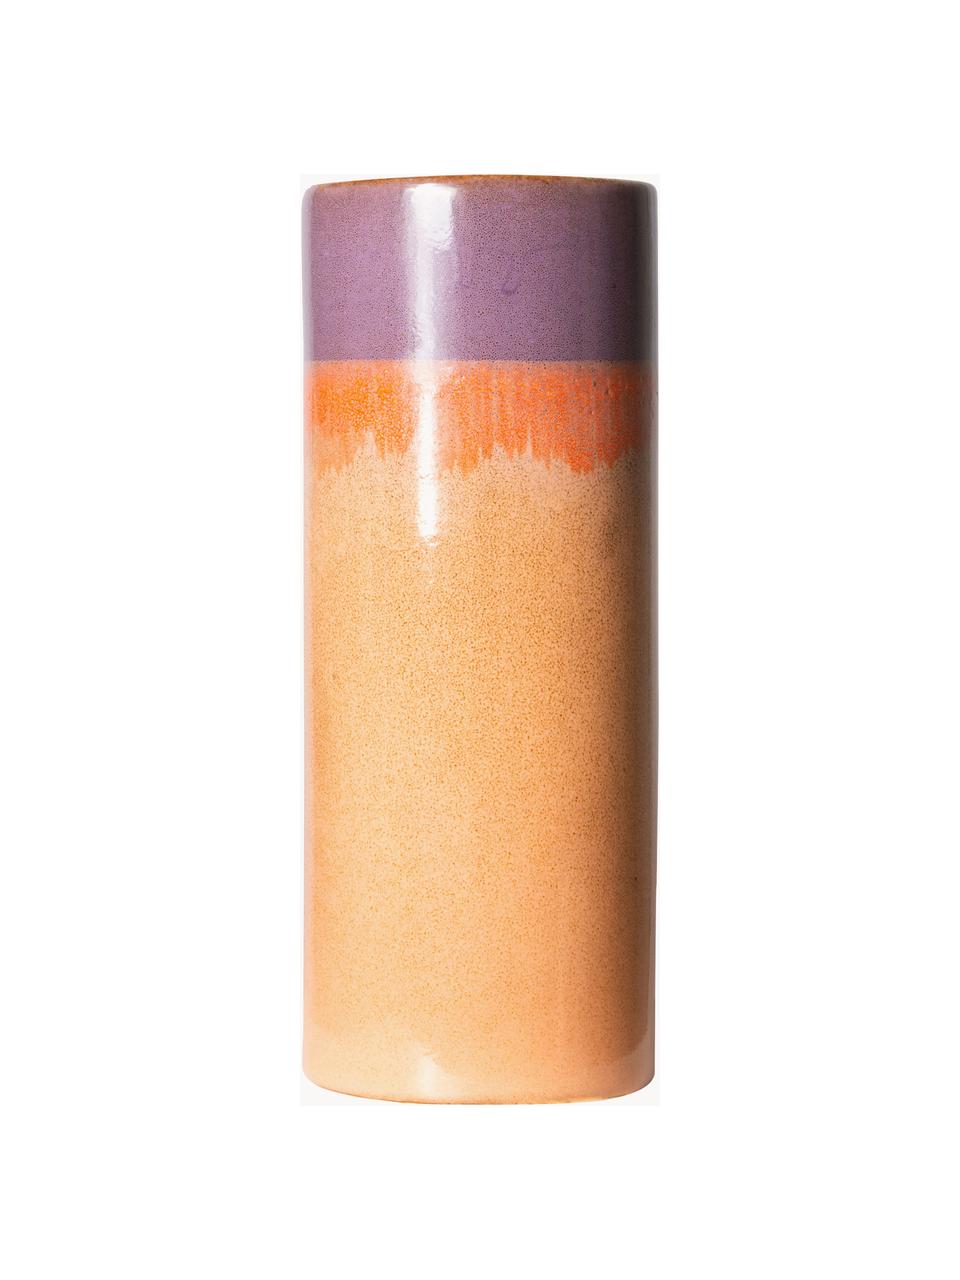 Handbeschilderde keramische vaas 70's met reactief glazuur, H 19 cm, Keramiek, Oranje, lila, Ø 8 x H 19 cm